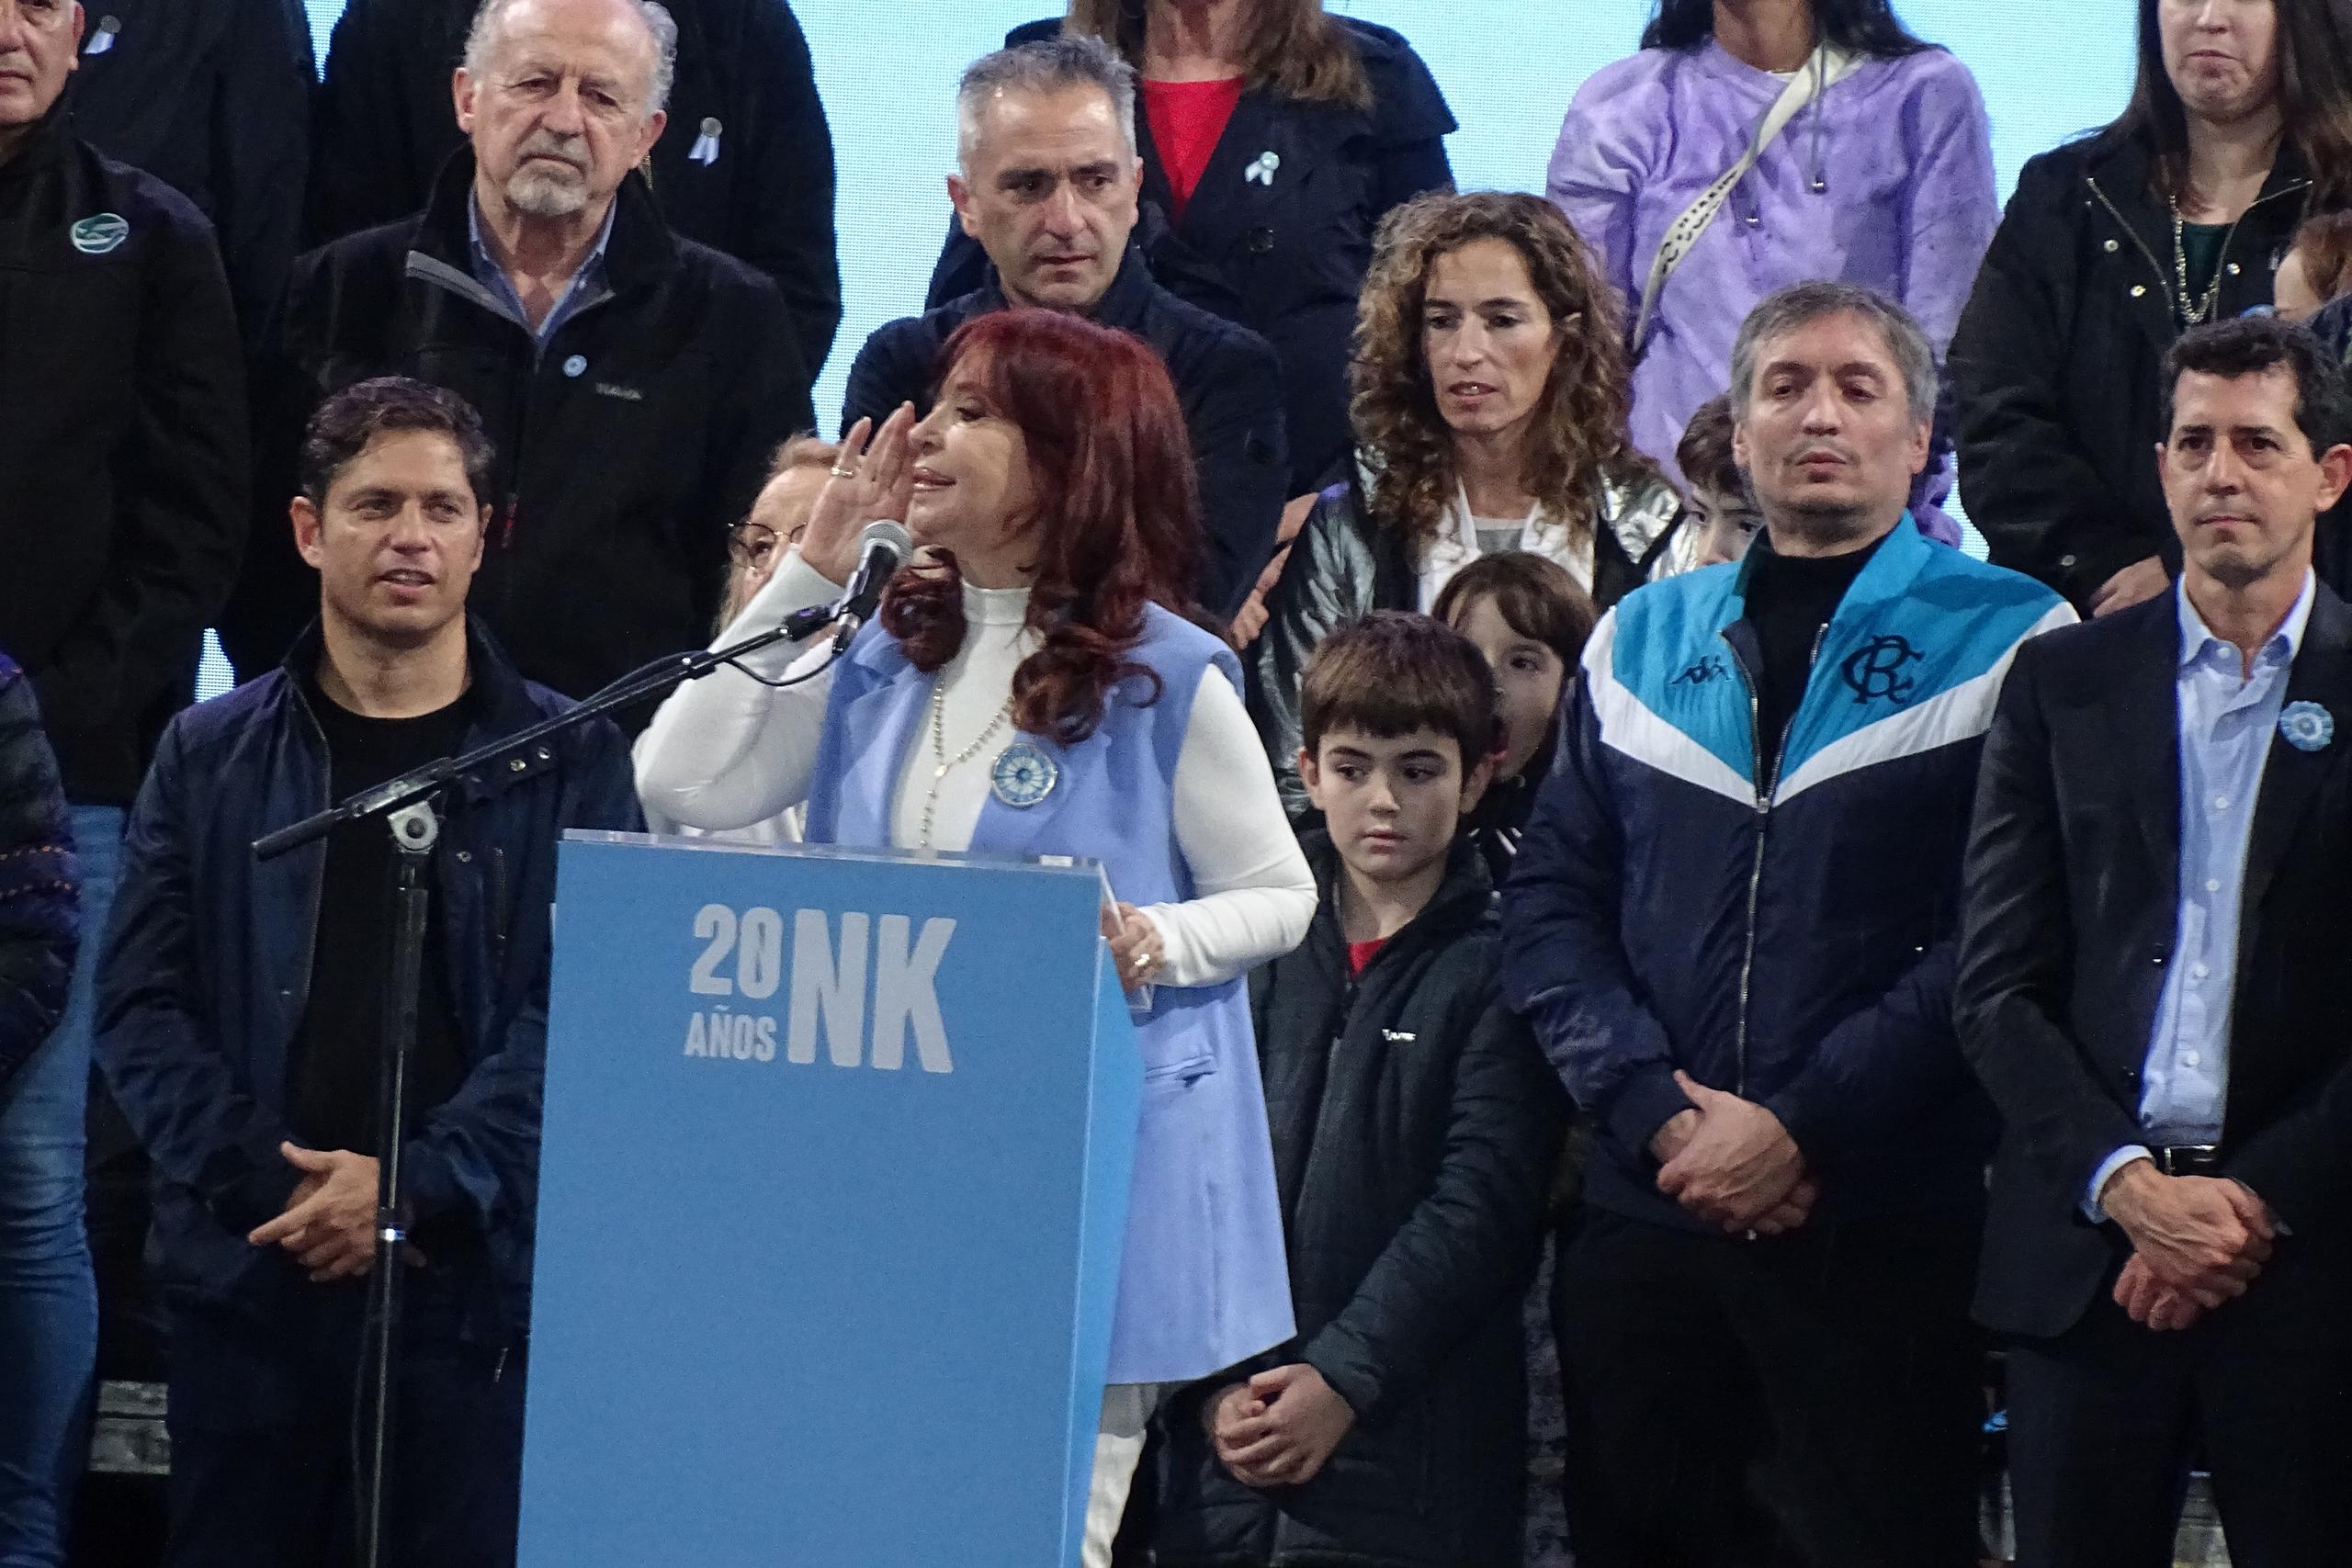 La vicepresidenta Cristina Fernández también respondió al gobernador con las frases "hágase cargo" y "pare con la locura represiva que su propio accionar ha desatado".